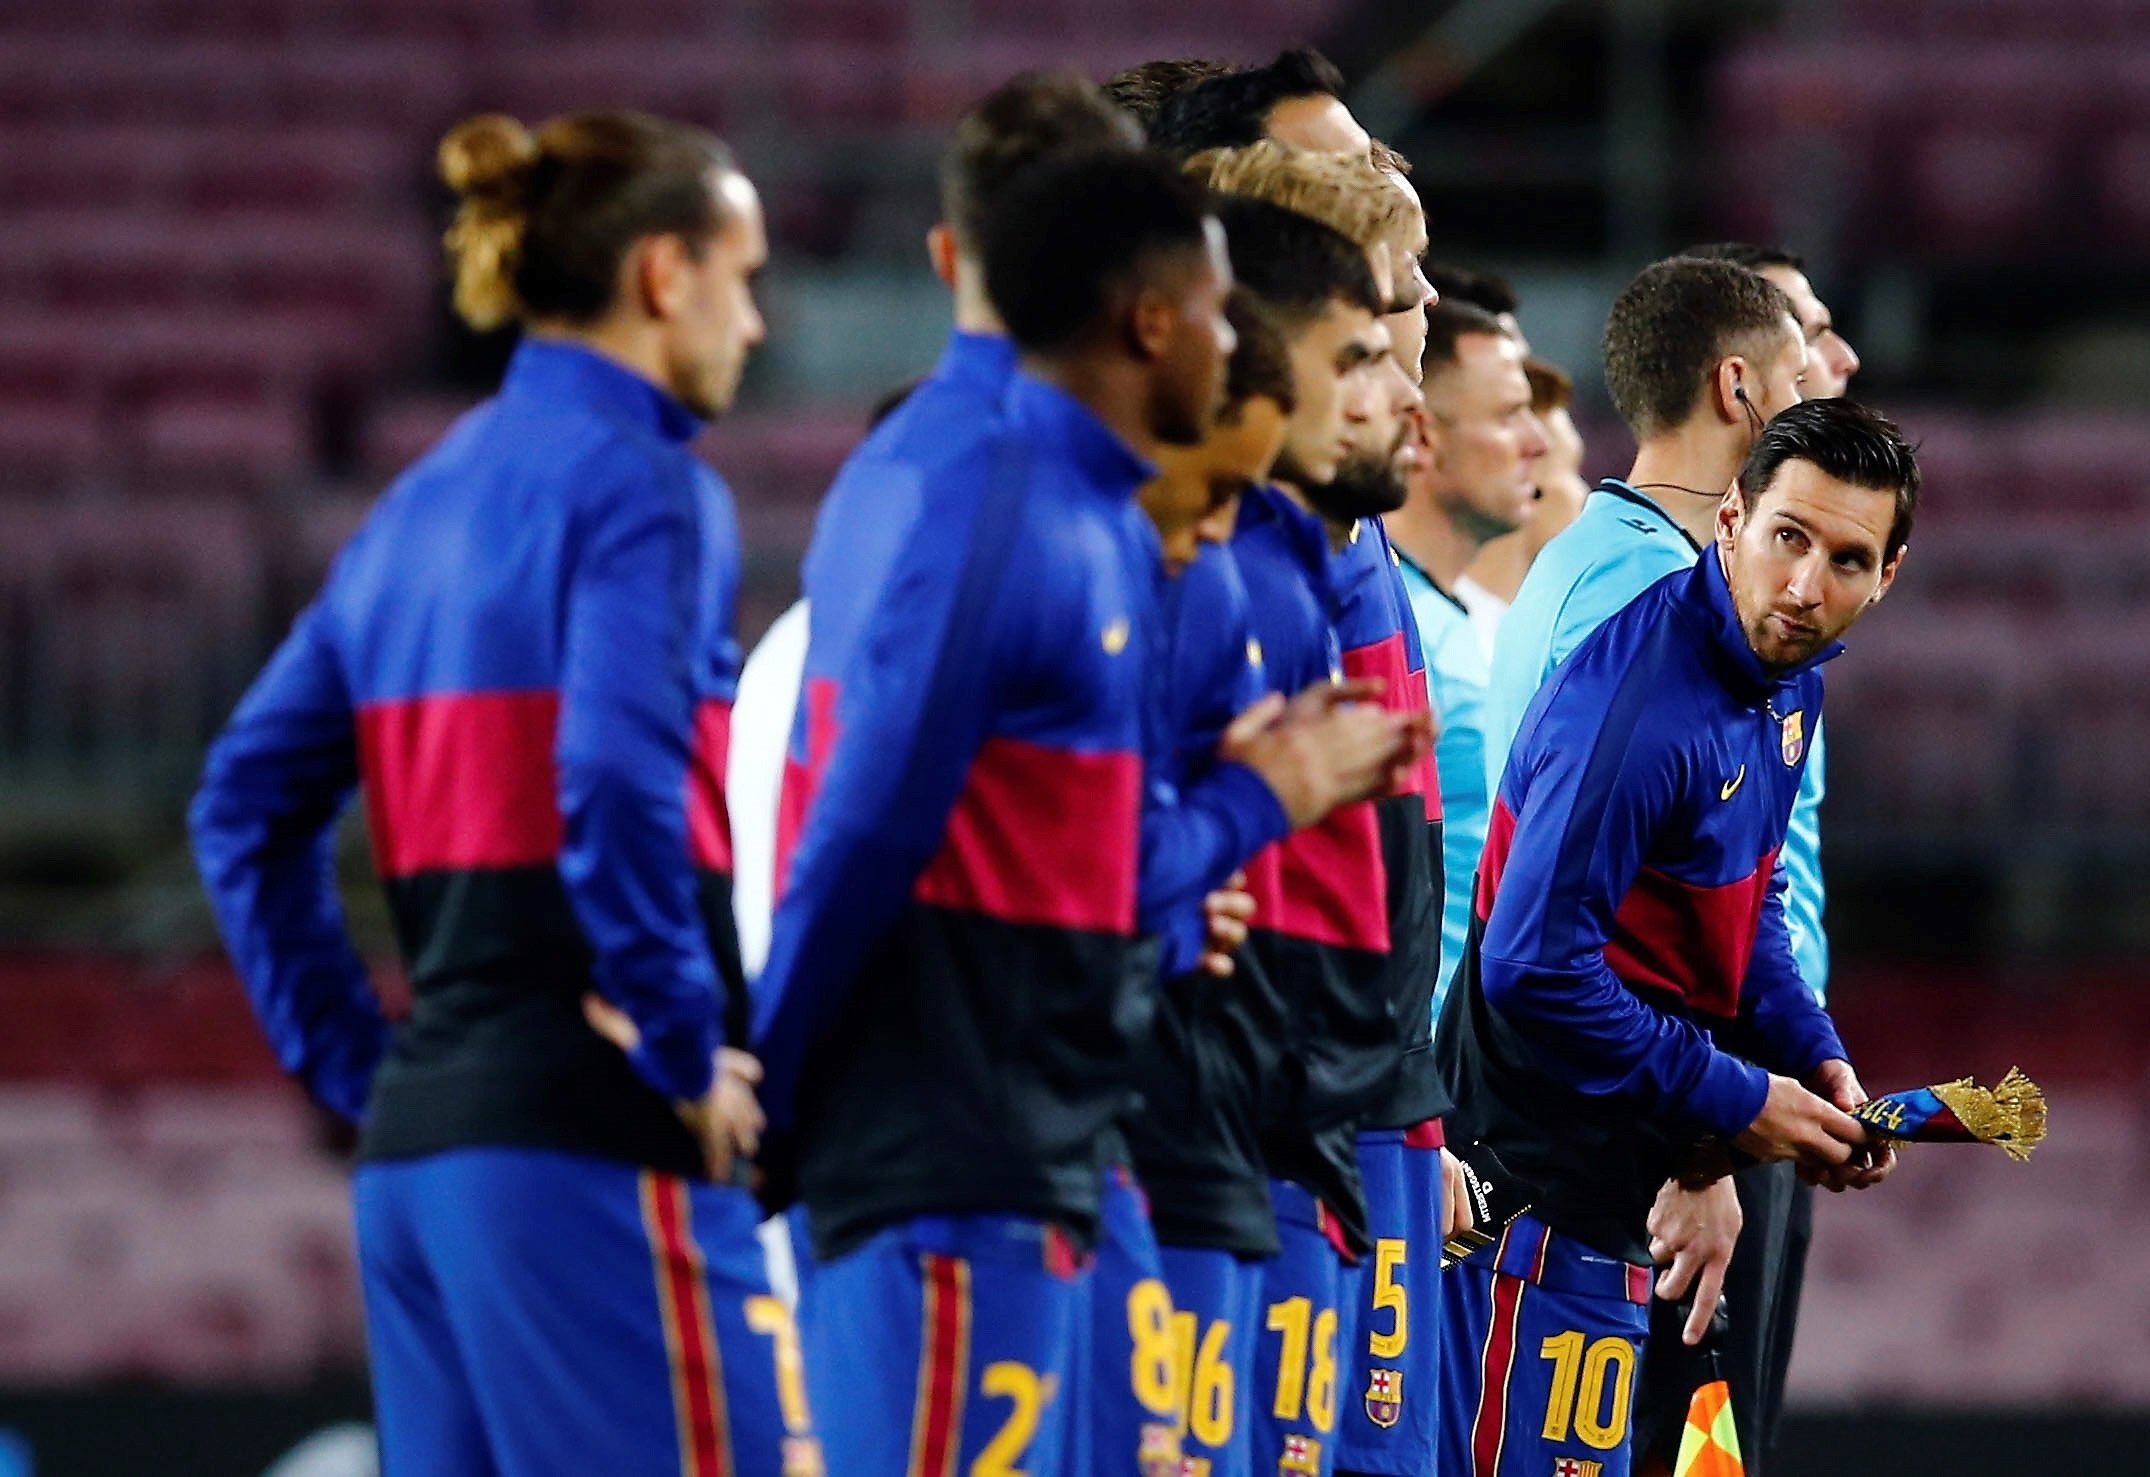 La negociación por la rebaja salarial entre Barça y jugadores acaba sin acuerdo